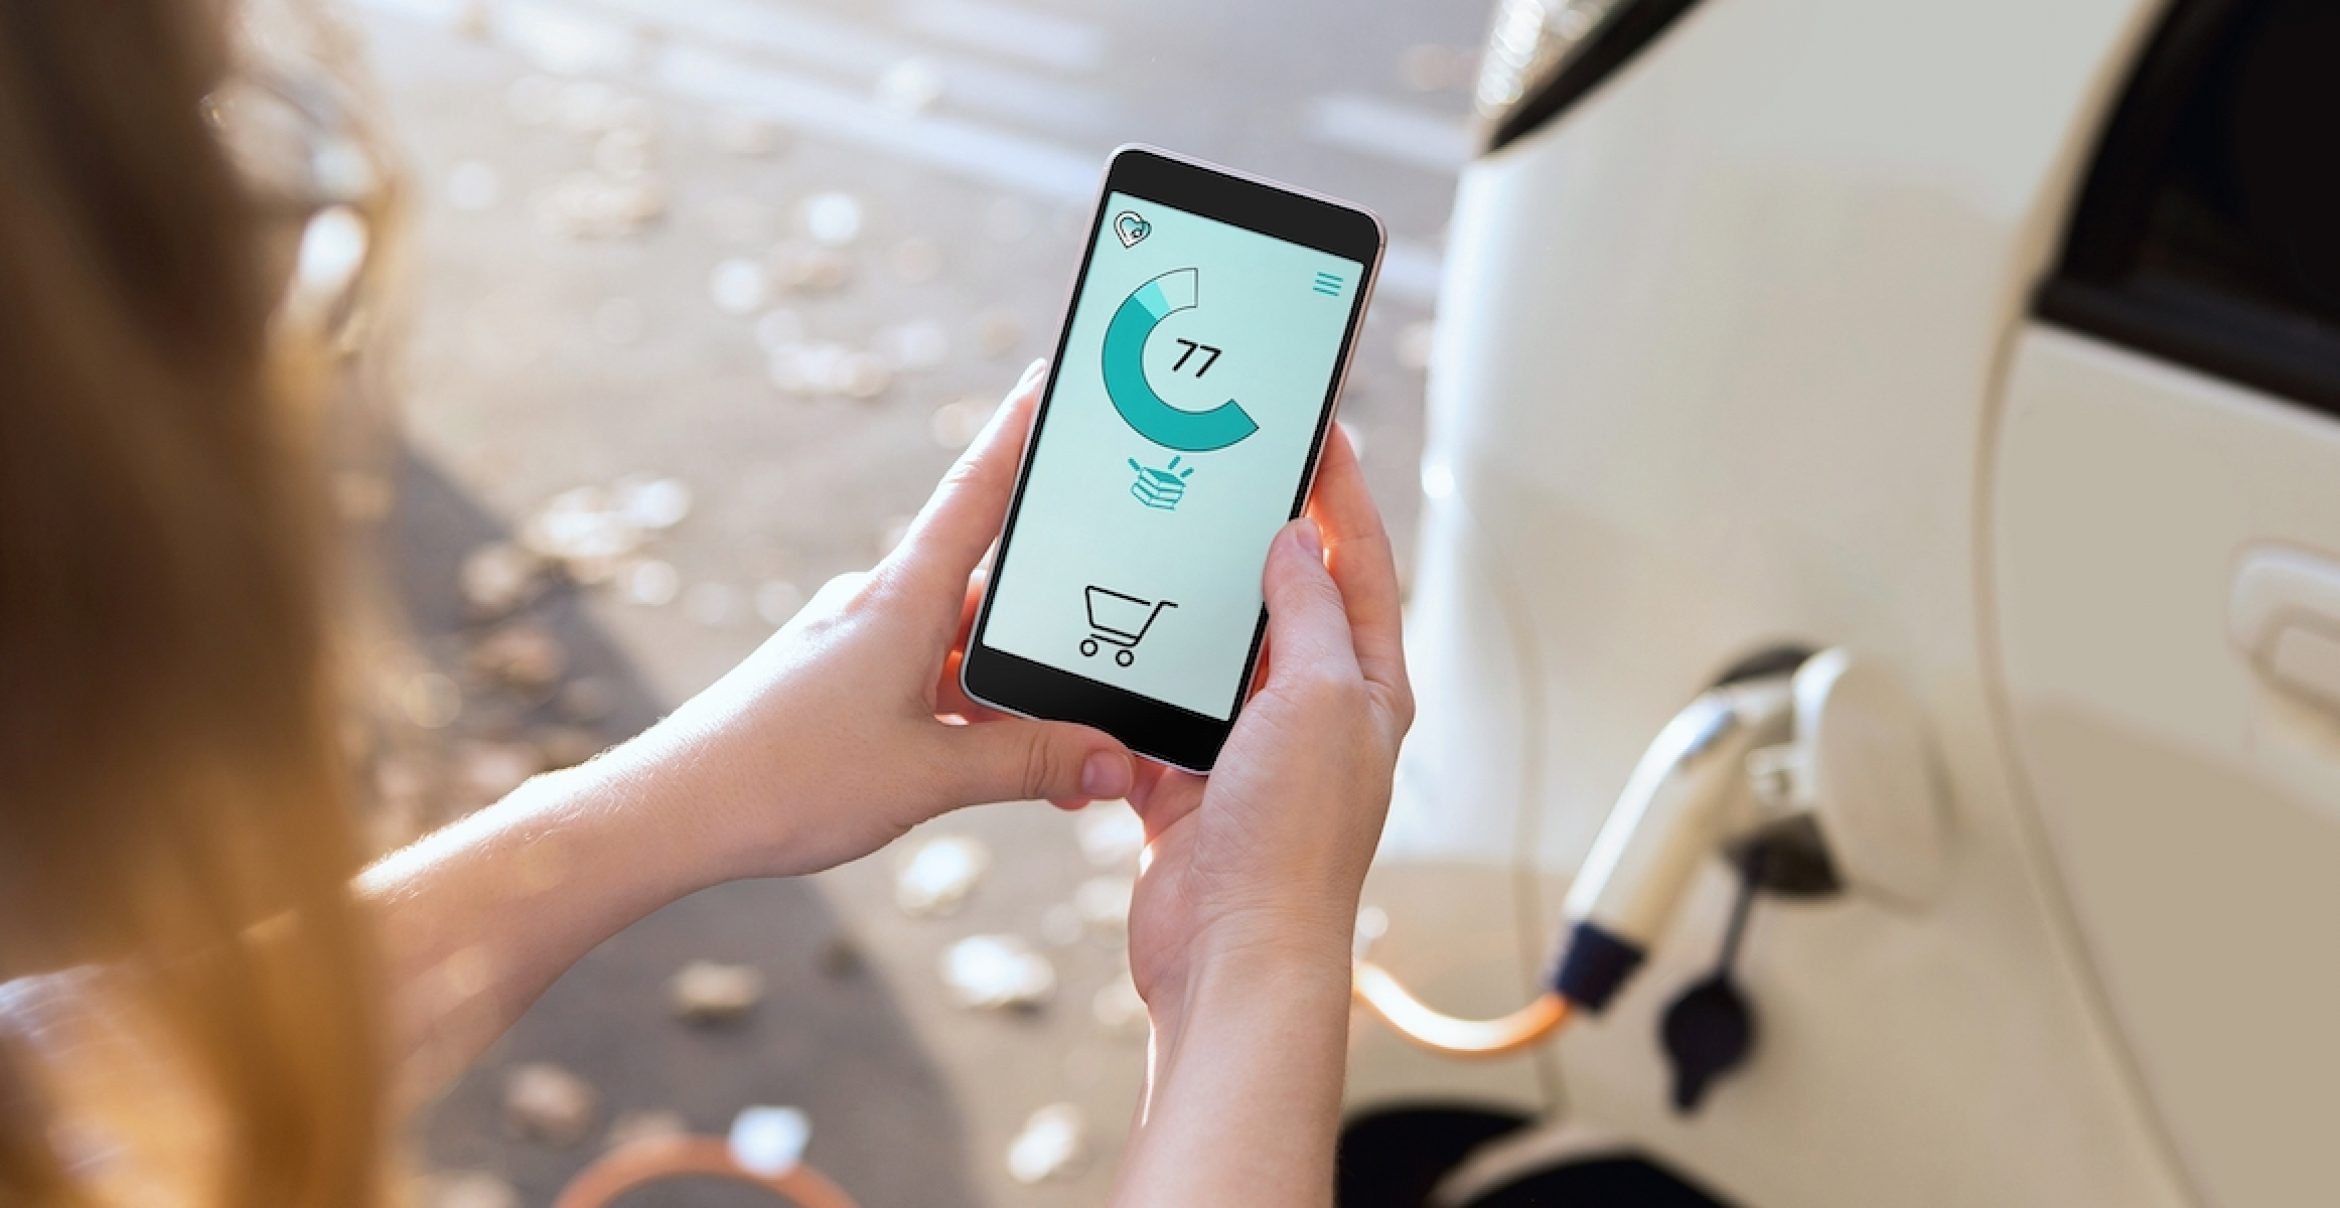 &Charge: Wie ein Loyalitätsprogramm E-Mobility schneller voranbringen will